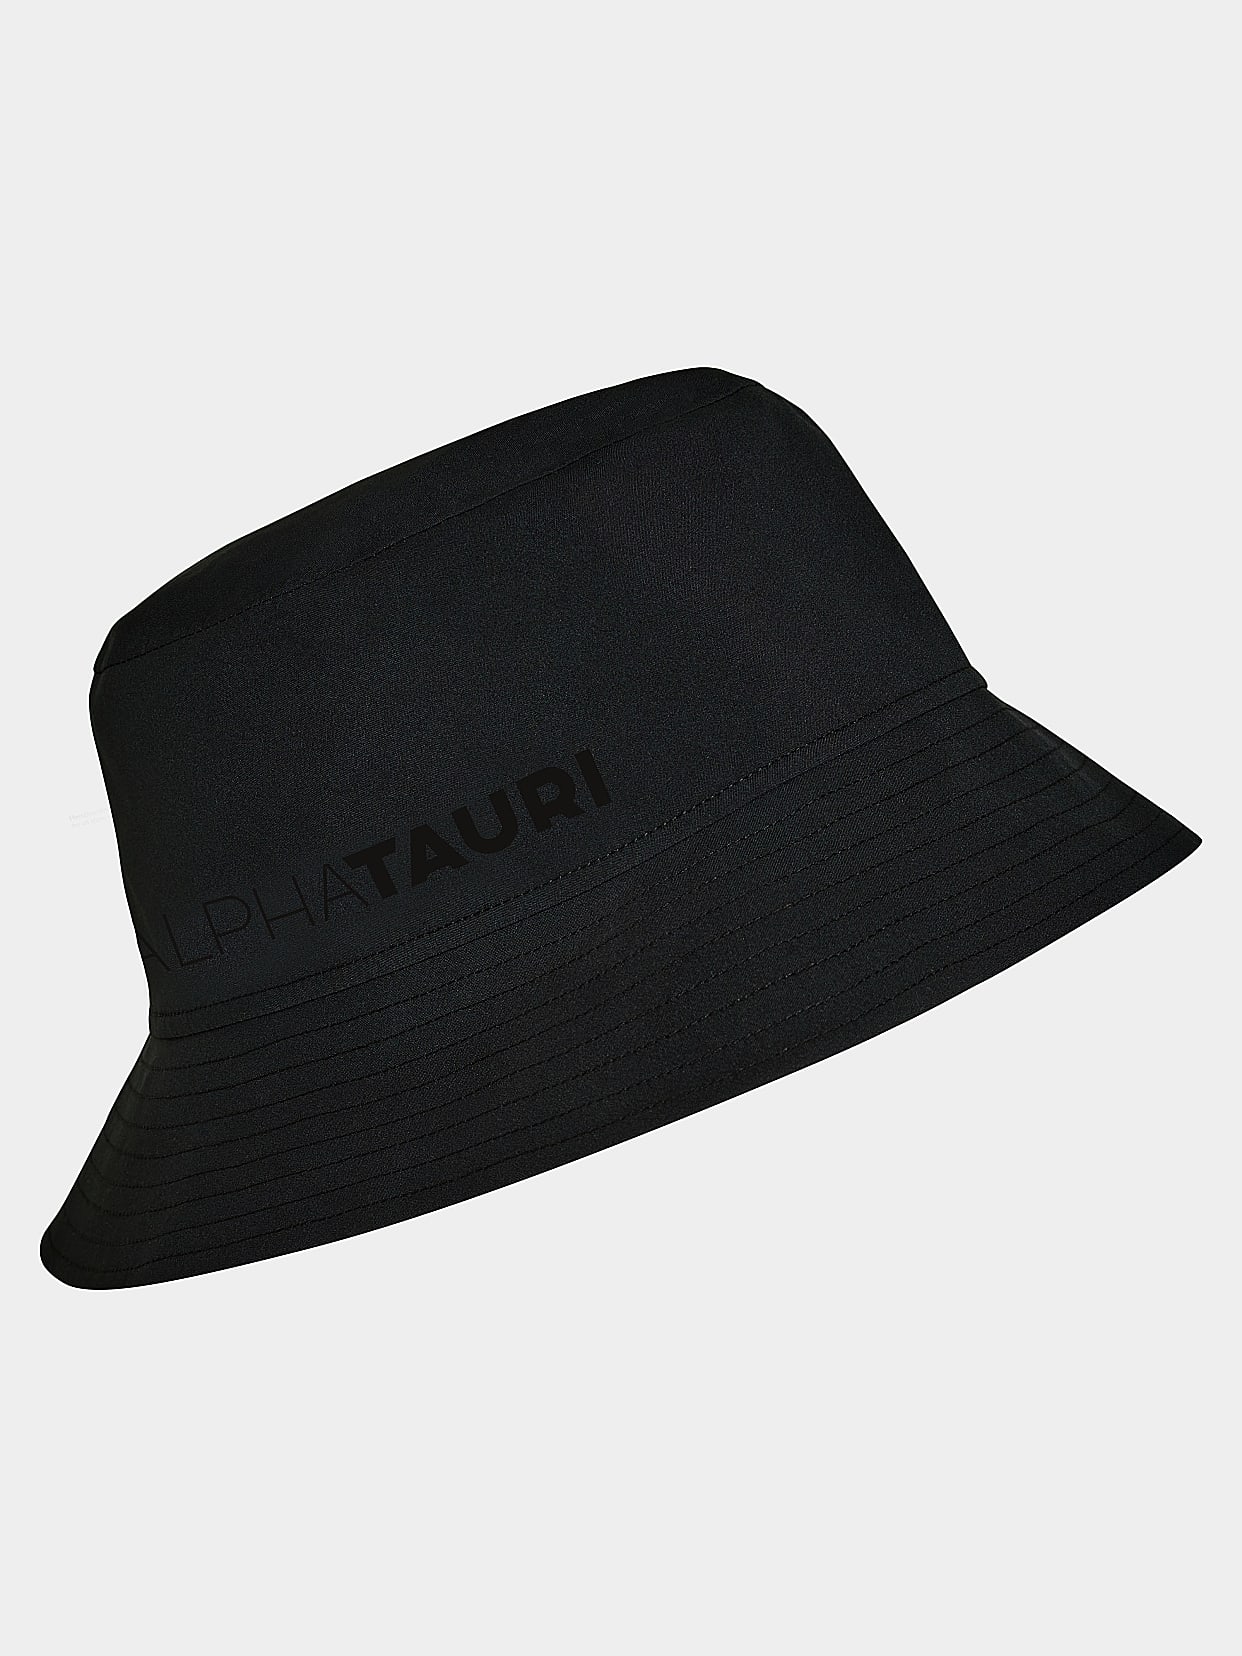 Taurobran® Bucket Hat, AVAU V1.Y7.02, Black